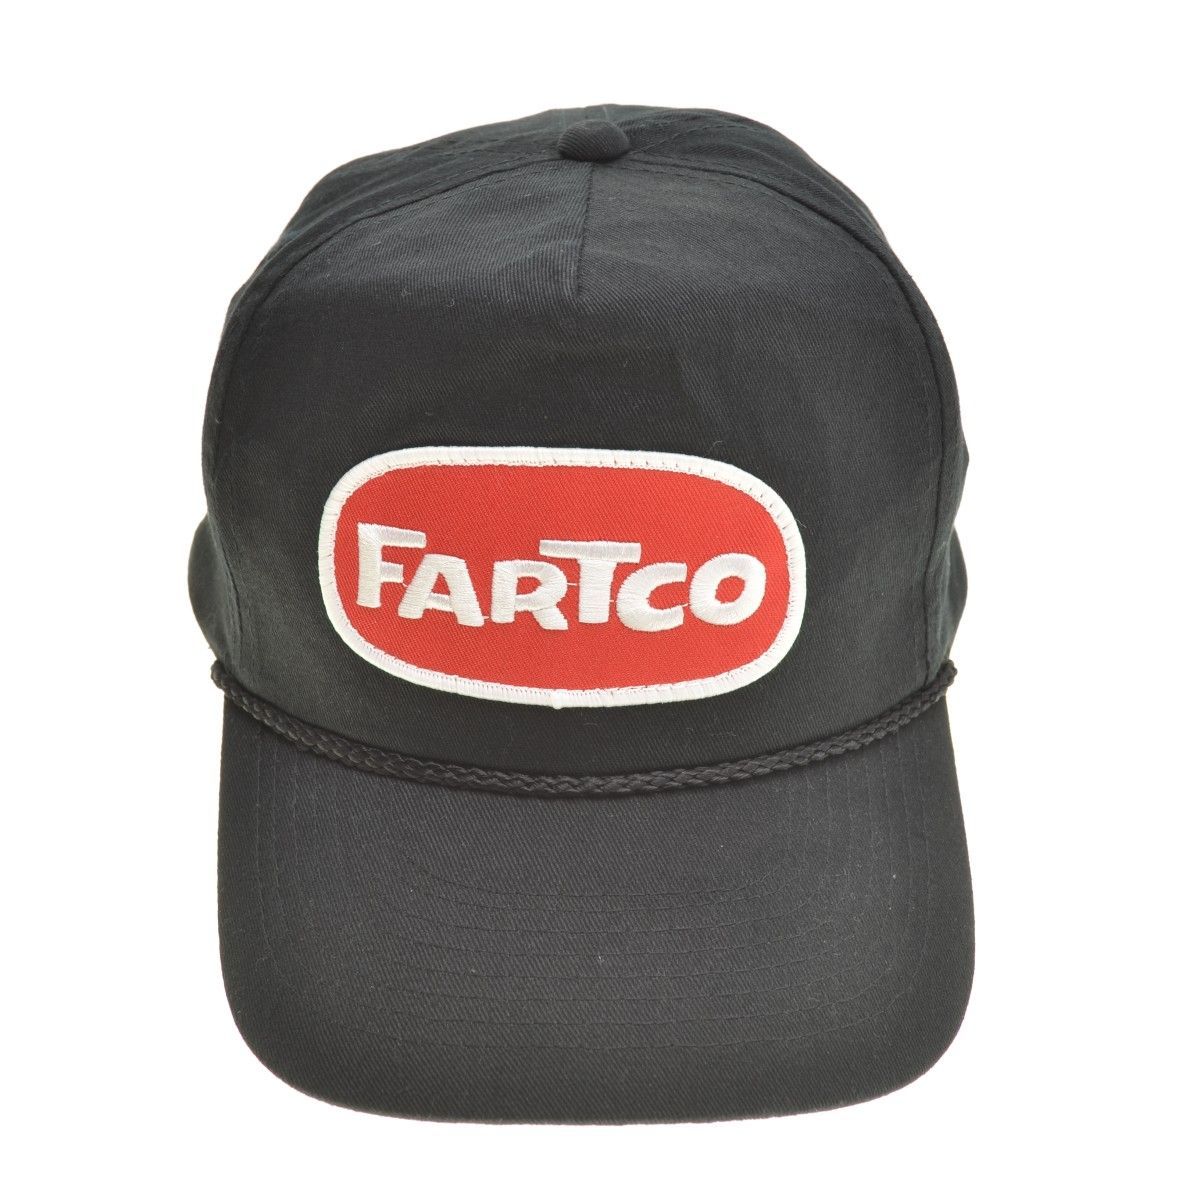 FARTCO (ファートコー)キャップ ブラウン - キャップ